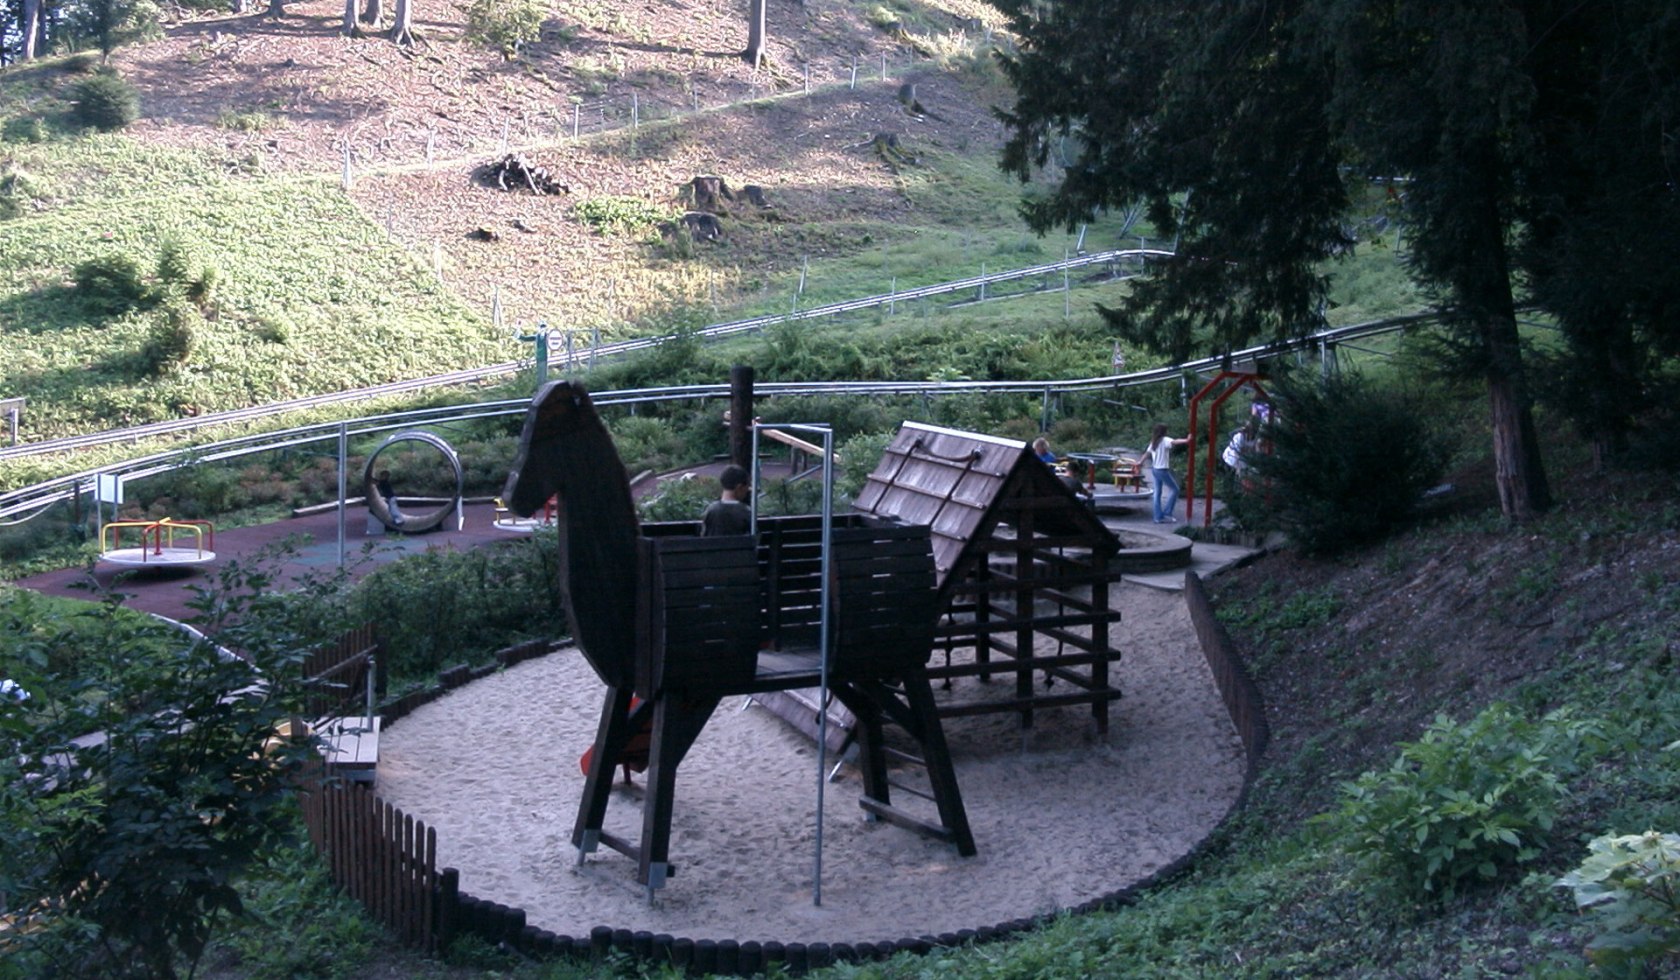 Trojanisches Pferd auf dem Kinderspielplatz der Rodelbahn Bodenwerder, © TourismusMarketing Niedersachsen GmbH